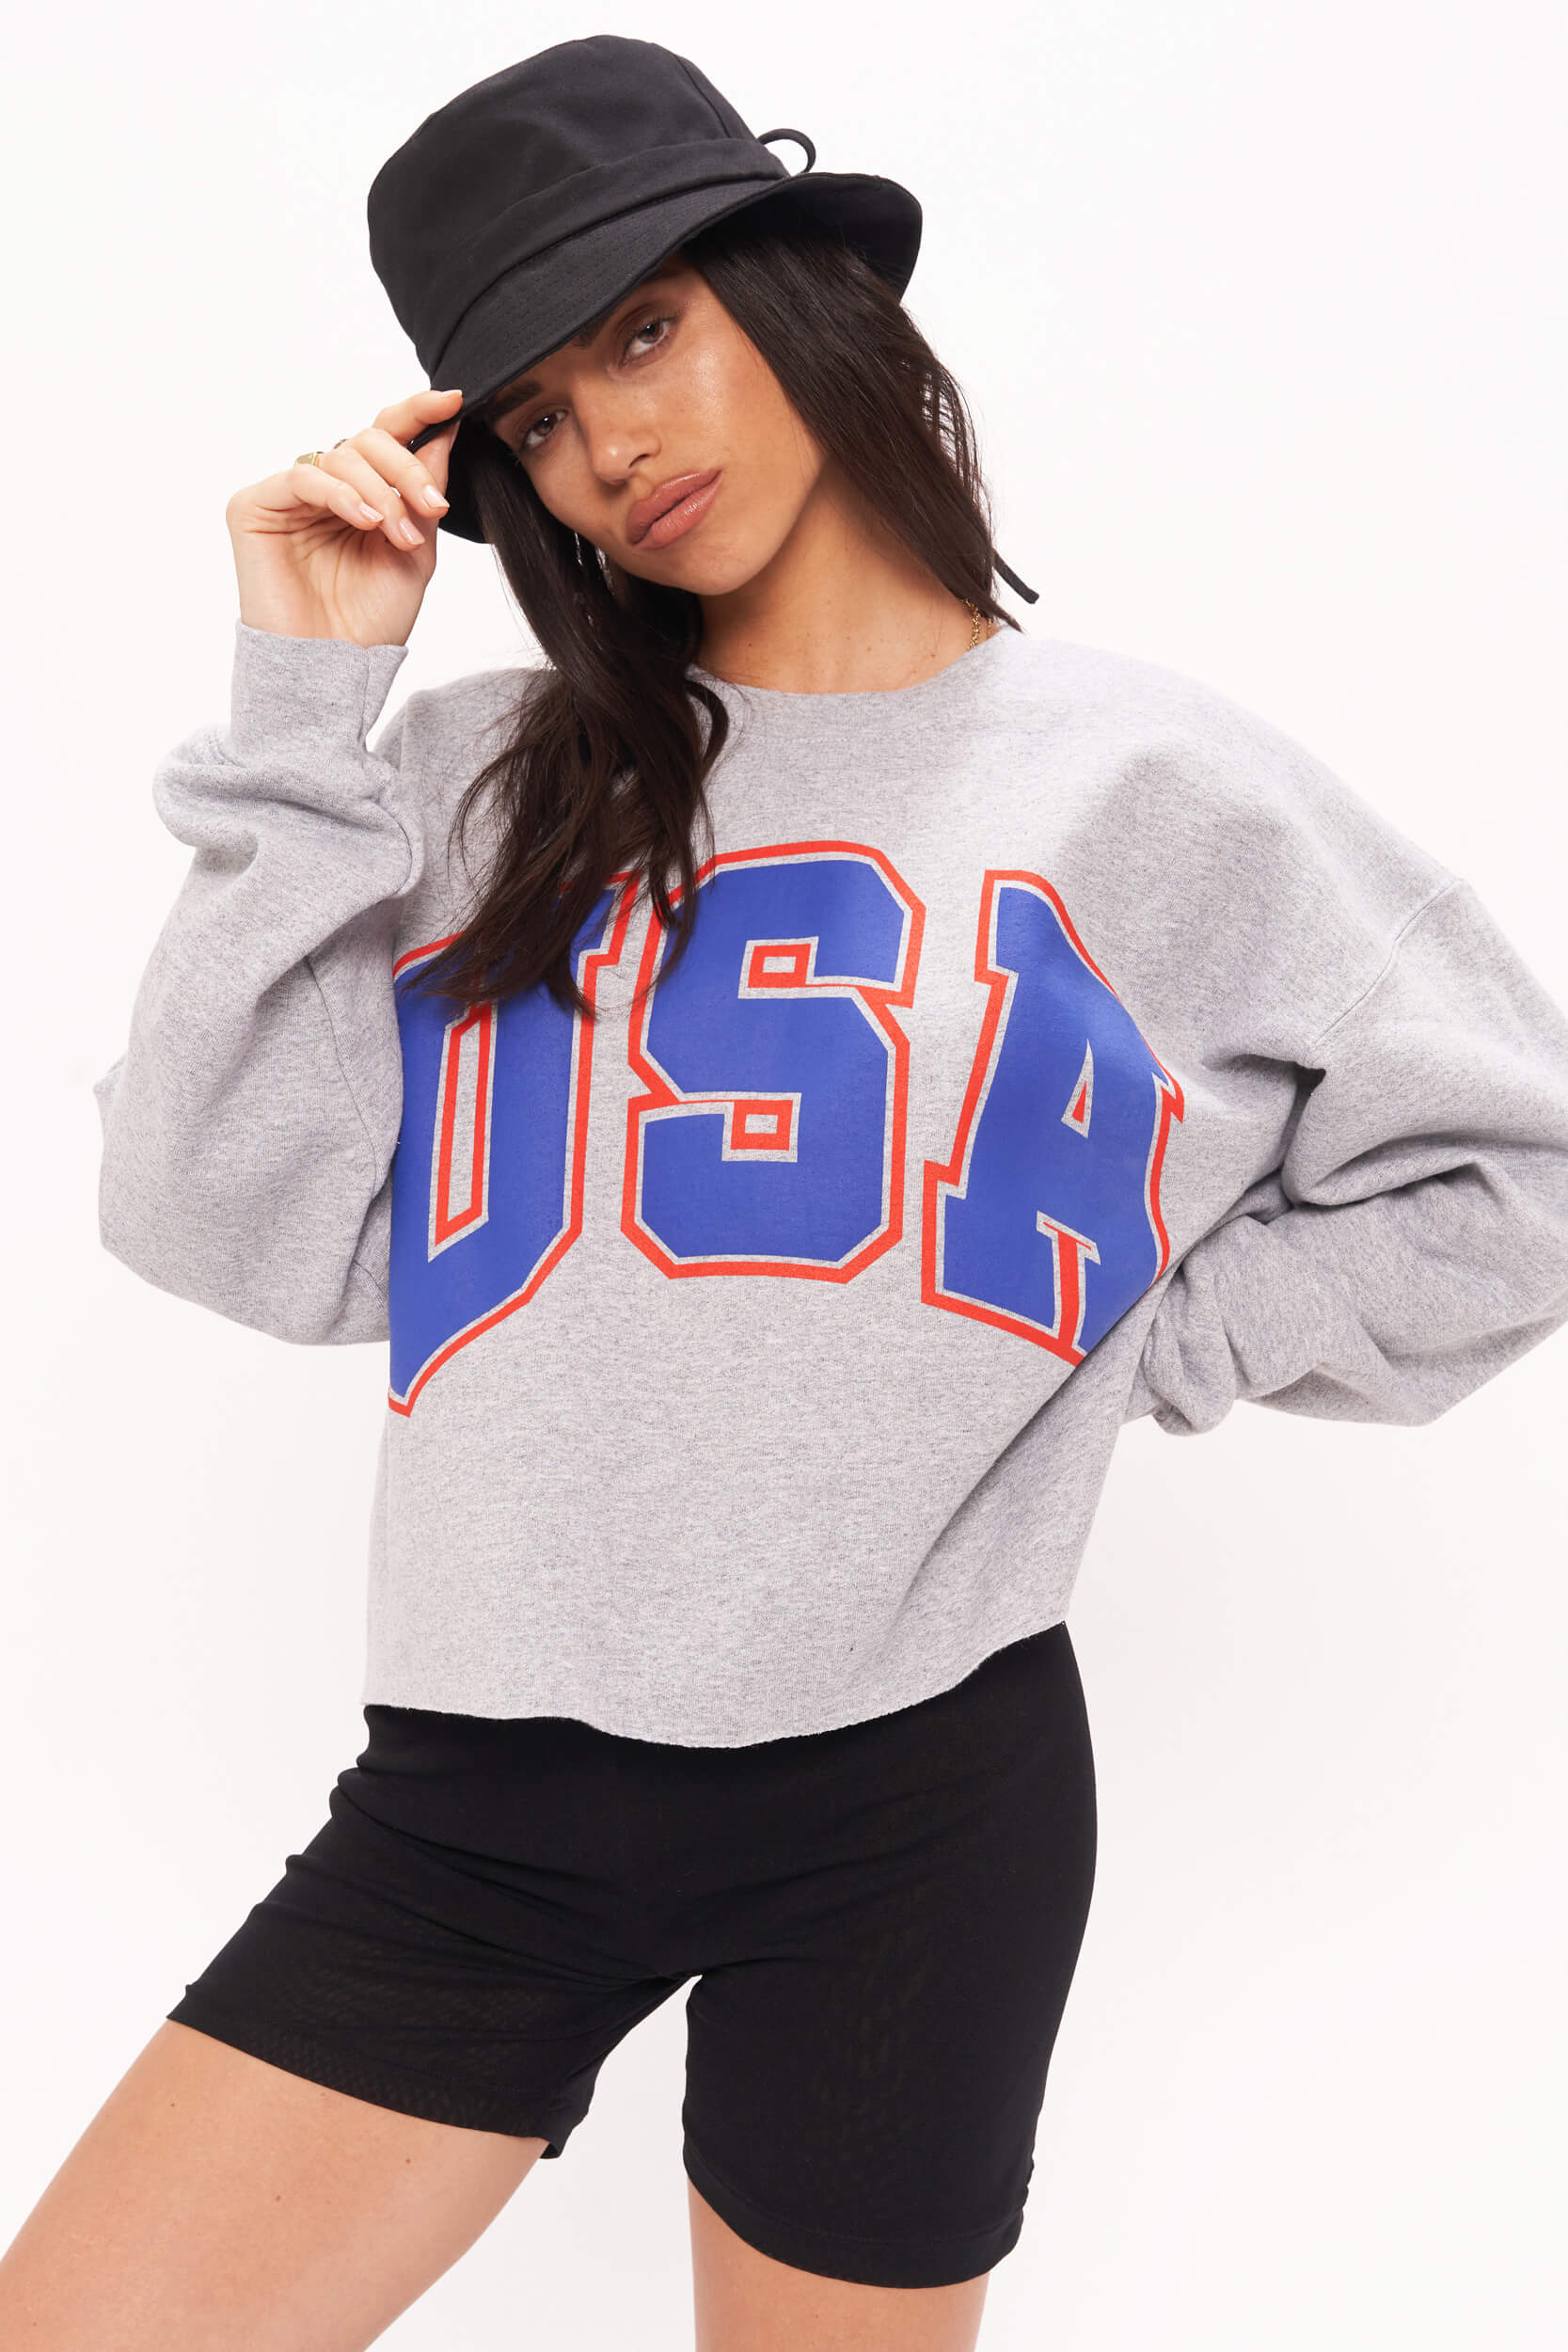 USA Sweatshirt